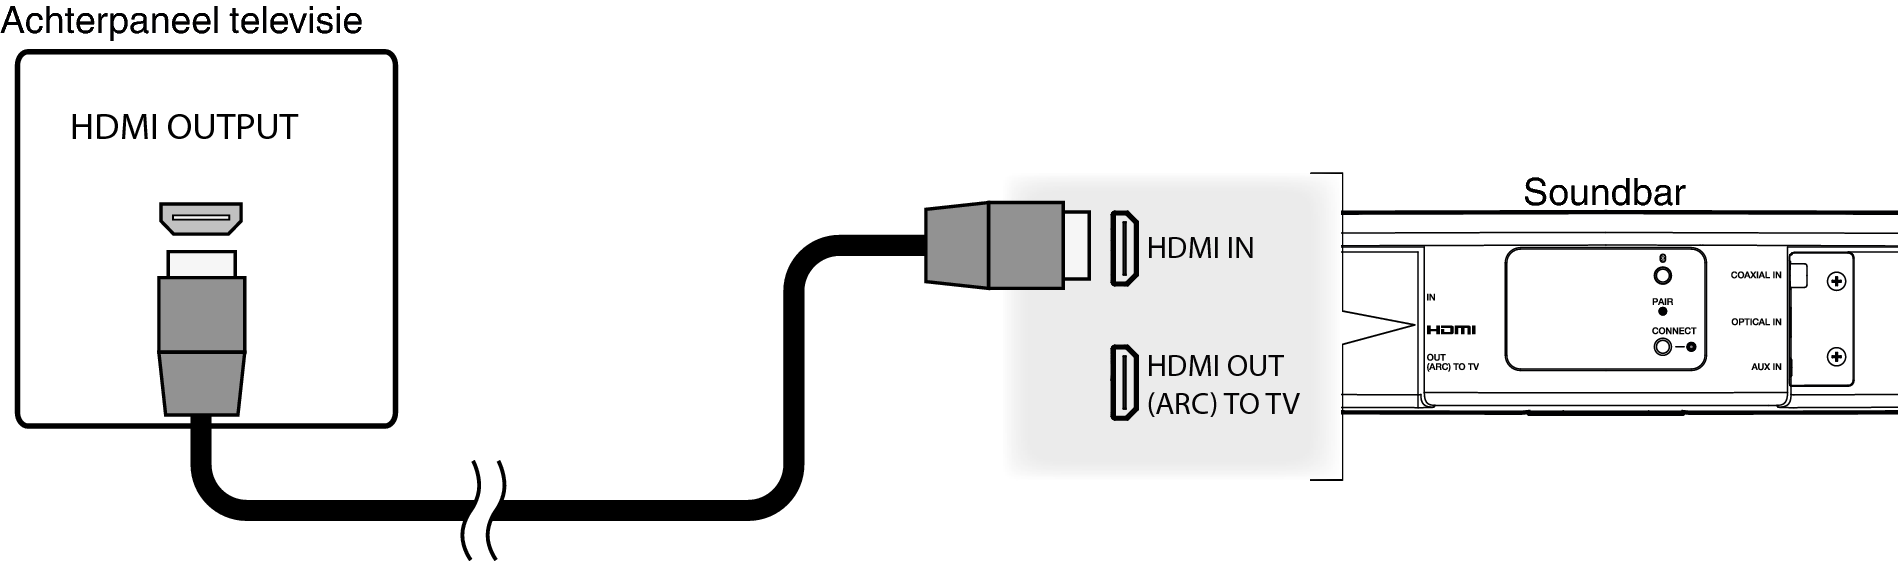 Conne HCHS2 HDMI IN